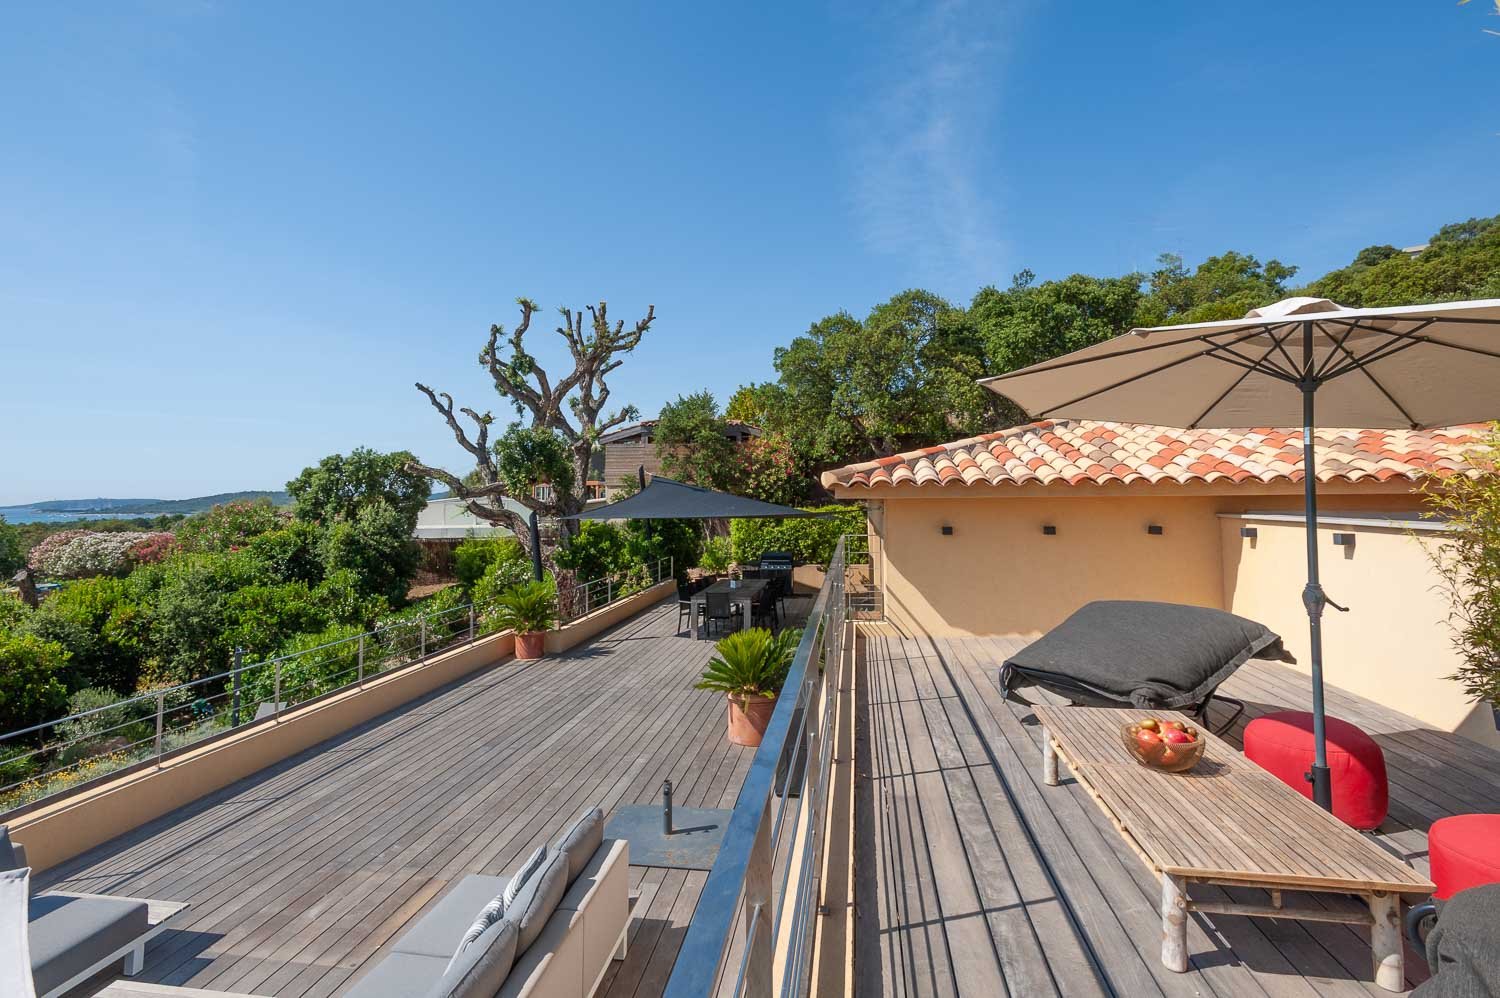 Location villa Porto-Vecchio Corse du sud vacances villa vue mer piscine luxe 4 chambres